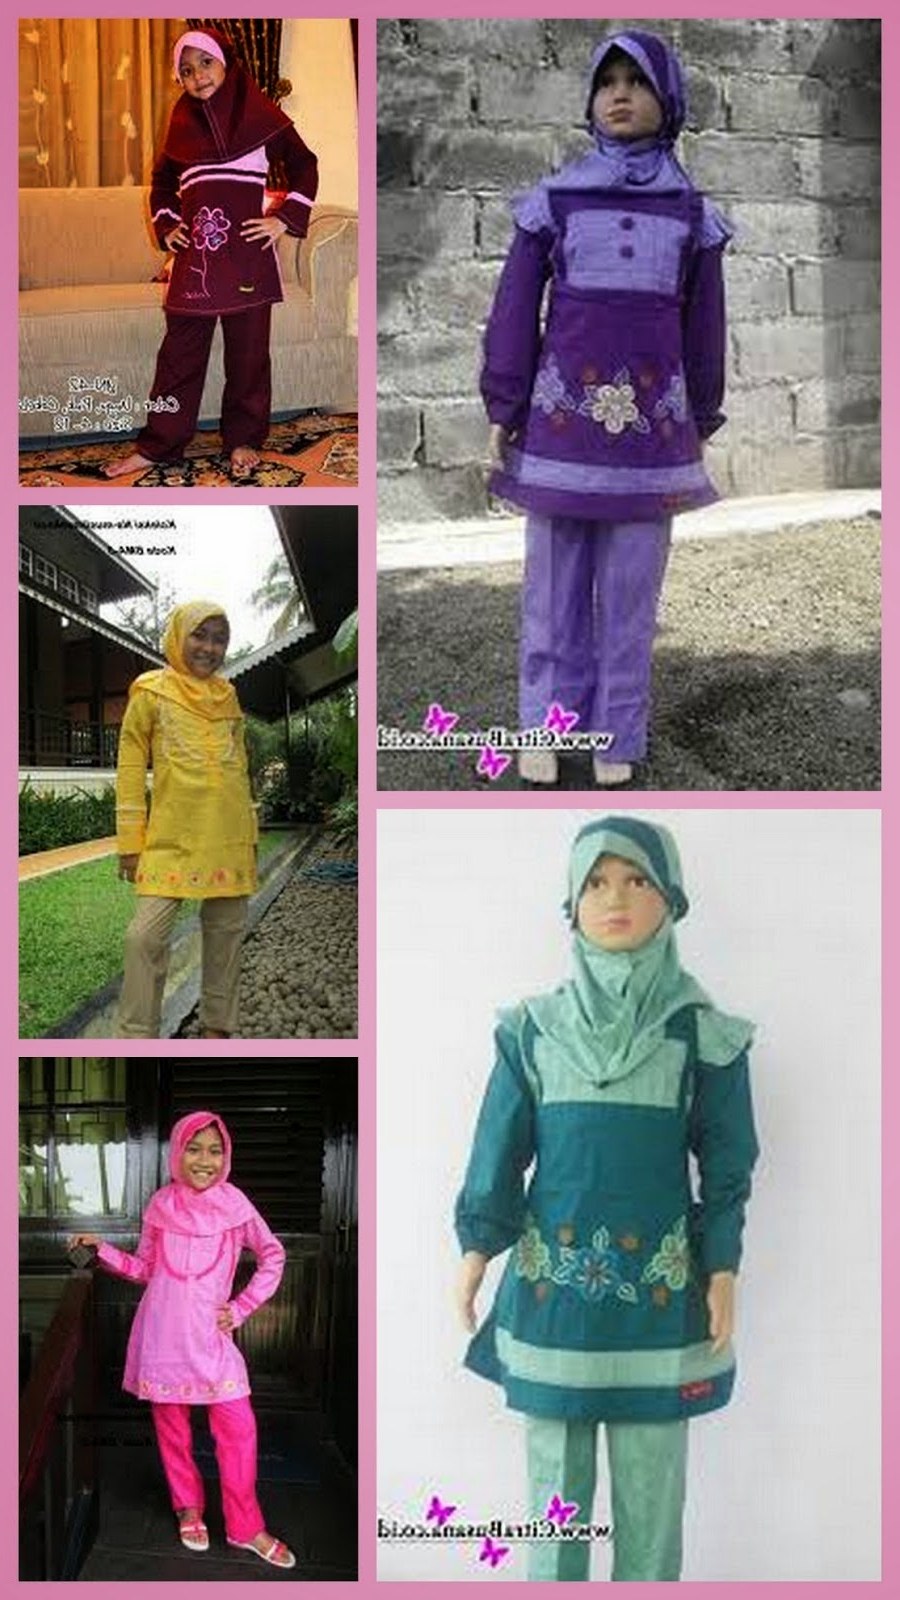 Bentuk Baju Lebaran Anak Perempuan Umur 13 Tahun T8dj Baju Muslim Anak Wanita Usia 13 Tahun Untuk Lebaran